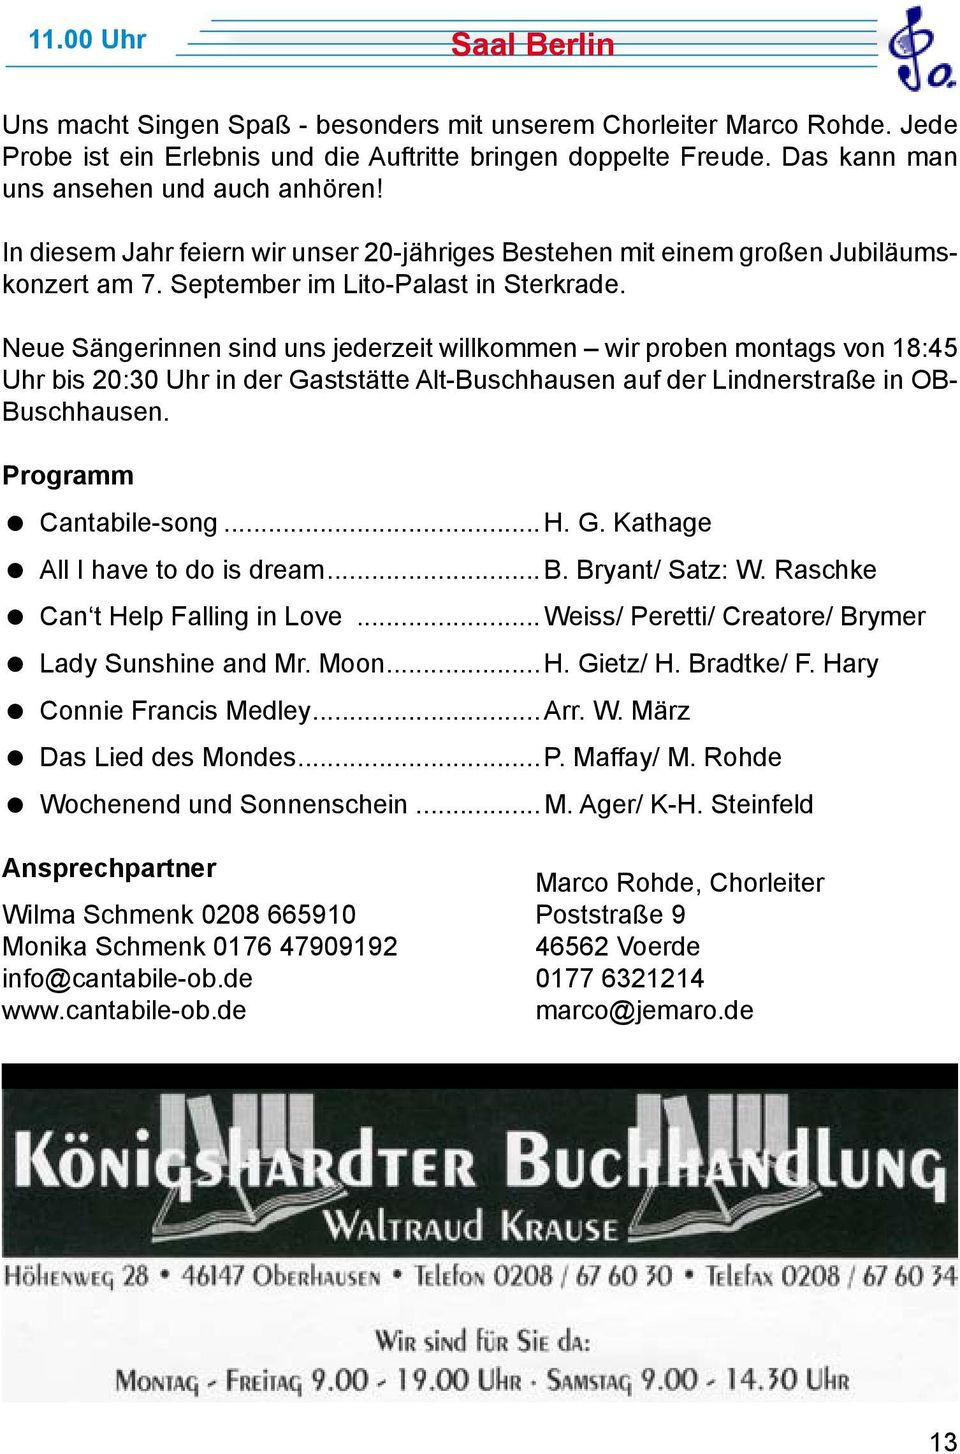 Neue Sängerinnen sind uns jederzeit willkommen wir proben montags von 18:45 Uhr bis 20:30 Uhr in der Gaststätte Alt-Buschhausen auf der Lindnerstraße in OB- Buschhausen. Programm Cantabile-song...H.